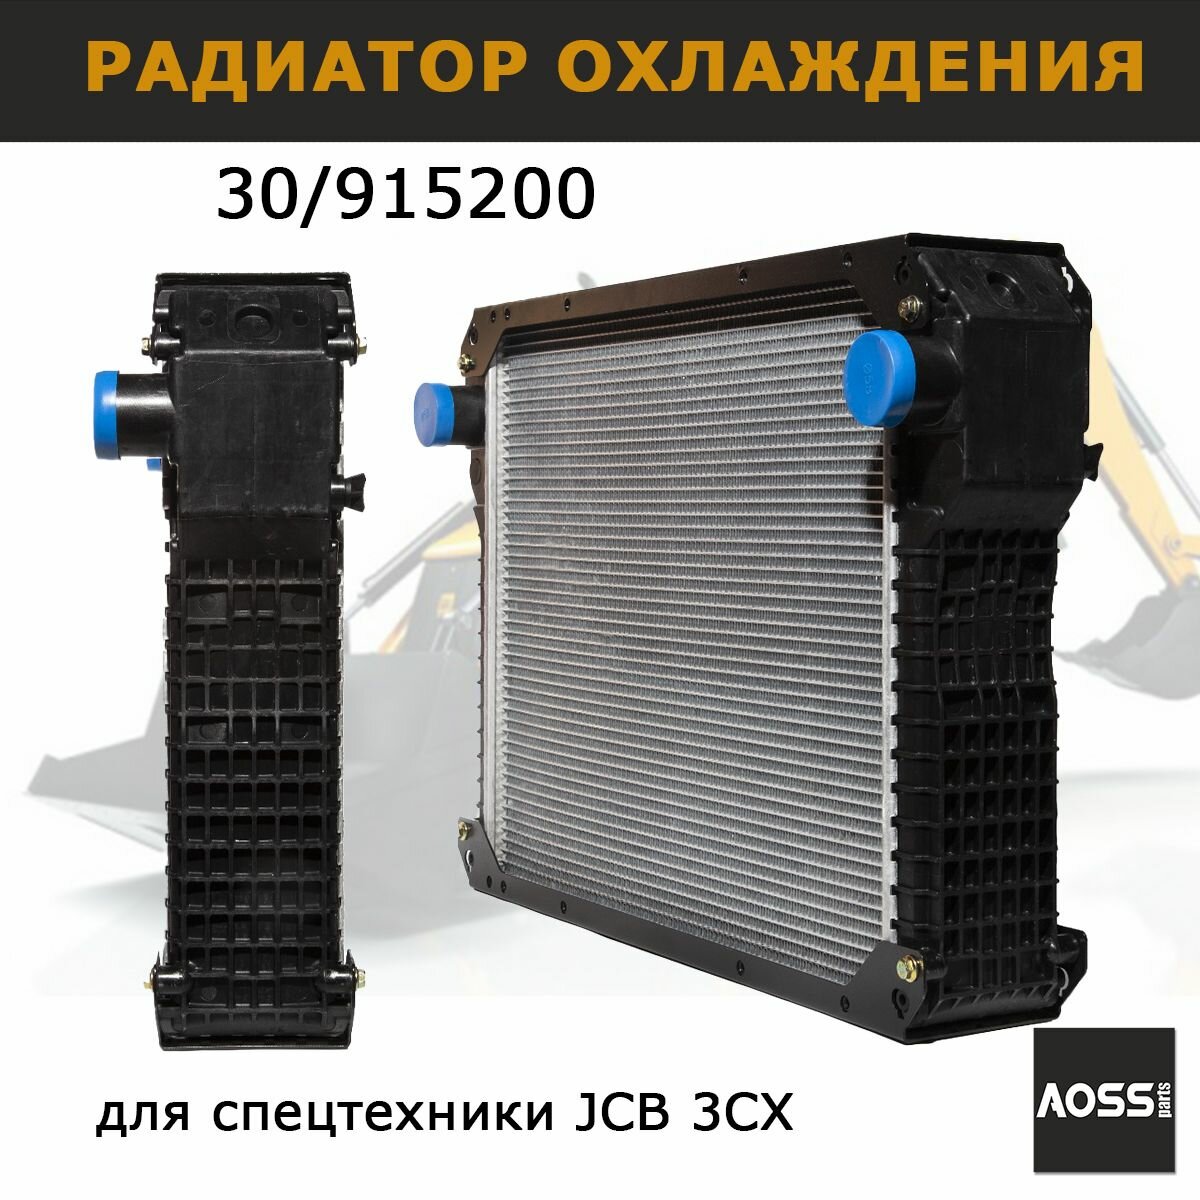 Радиатор охлаждения для JCB 3СХ запчасти 30/915200 AOSS parts для экскаватора-погрузчика